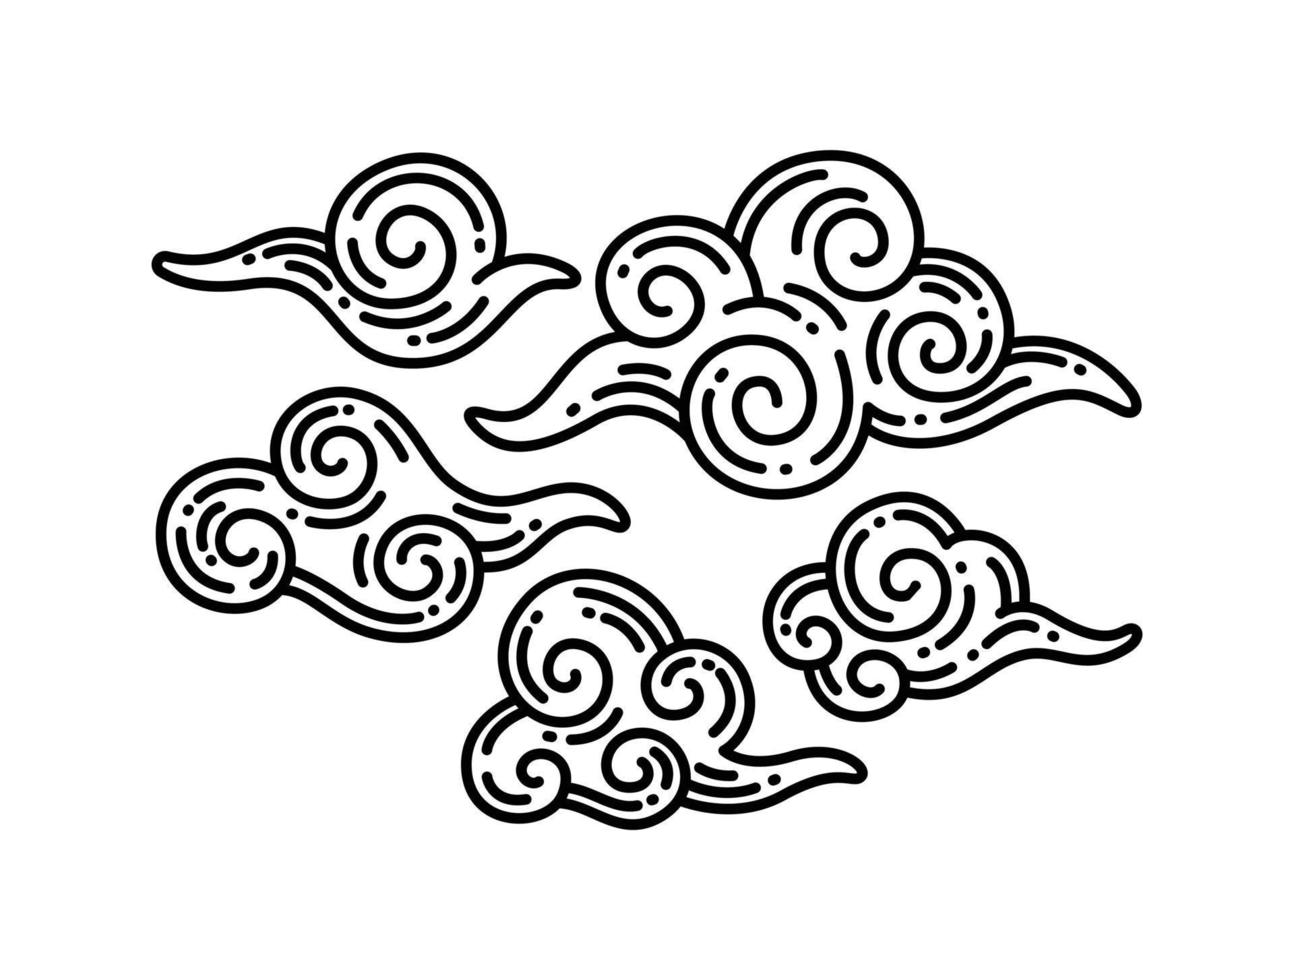 asiatischer Wolkensatz. traditionelle wolkige ornamente im chinesischen, koreanischen und japanischen orientalischen stil. vektor